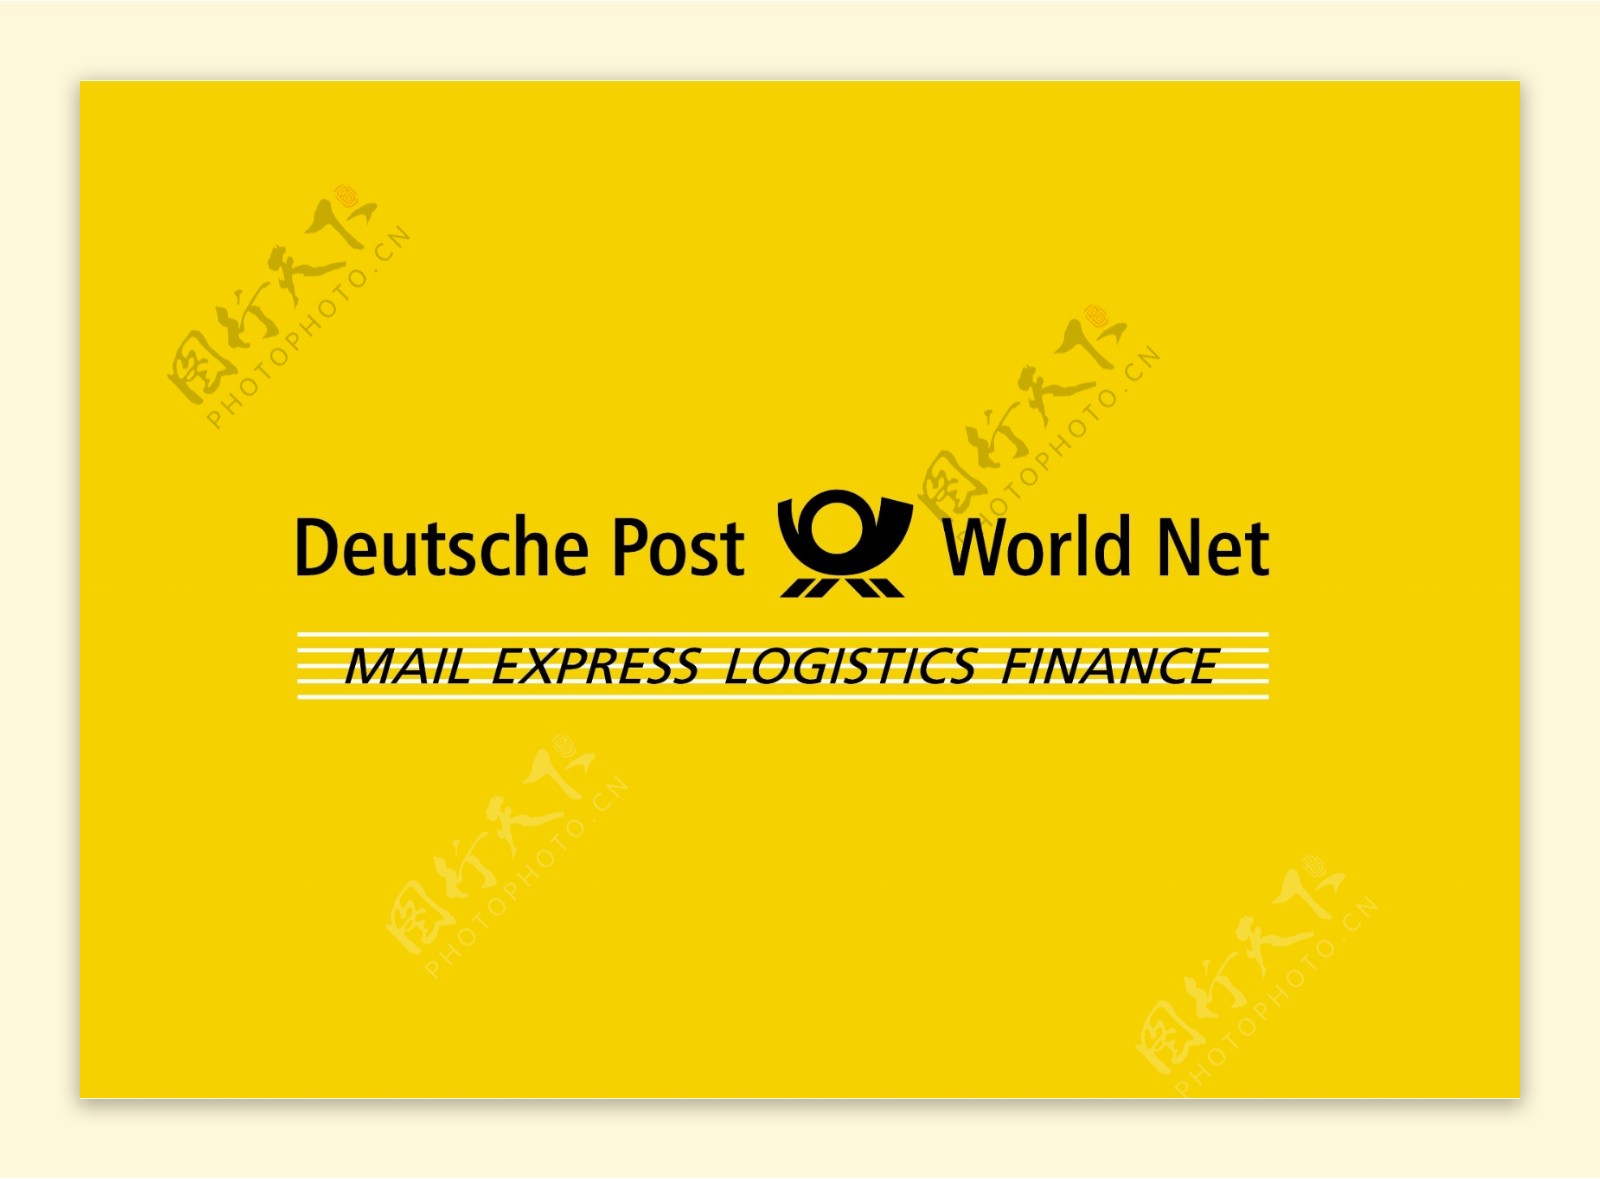 DeutschePostWorldNetlogo设计欣赏DeutschePostWorldNet公路运输标志下载标志设计欣赏